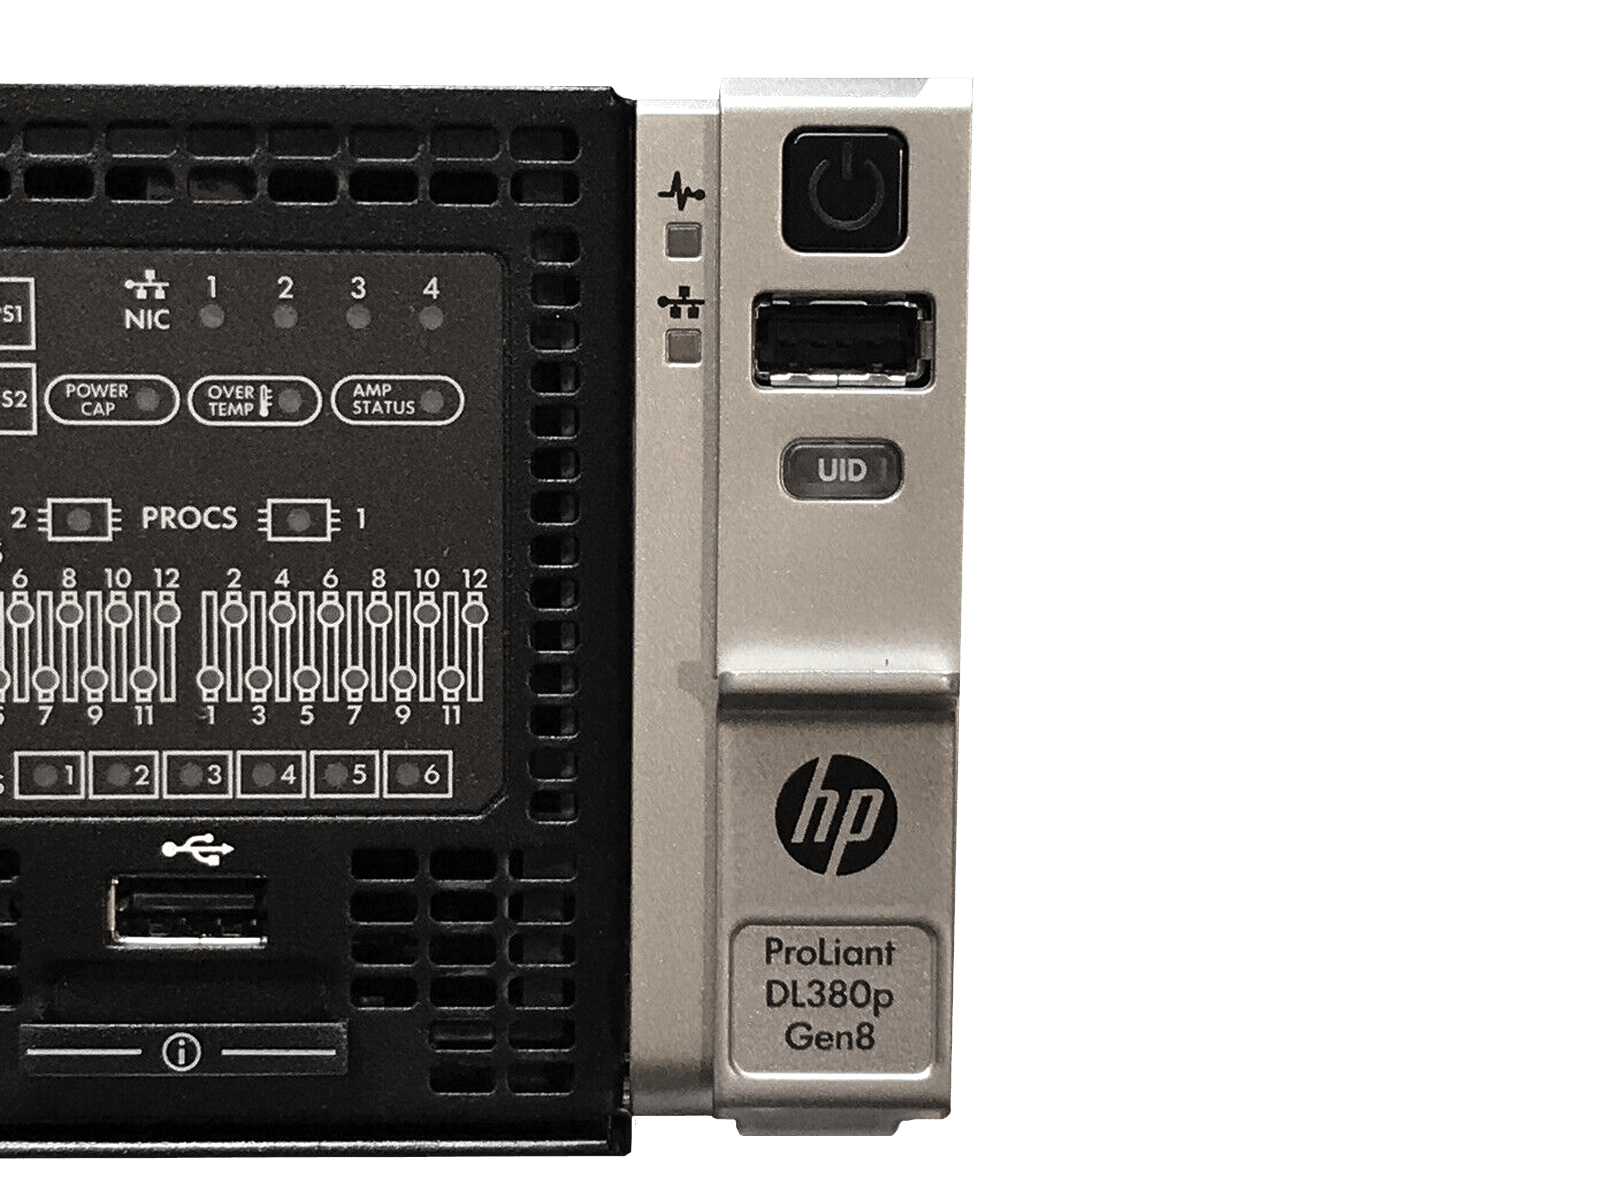 HP DL380p G8 2x E5-2697v2 12-core 384GB 8 bay SFF 2x 750W PSU P420i 2GB NIC iLO Adv